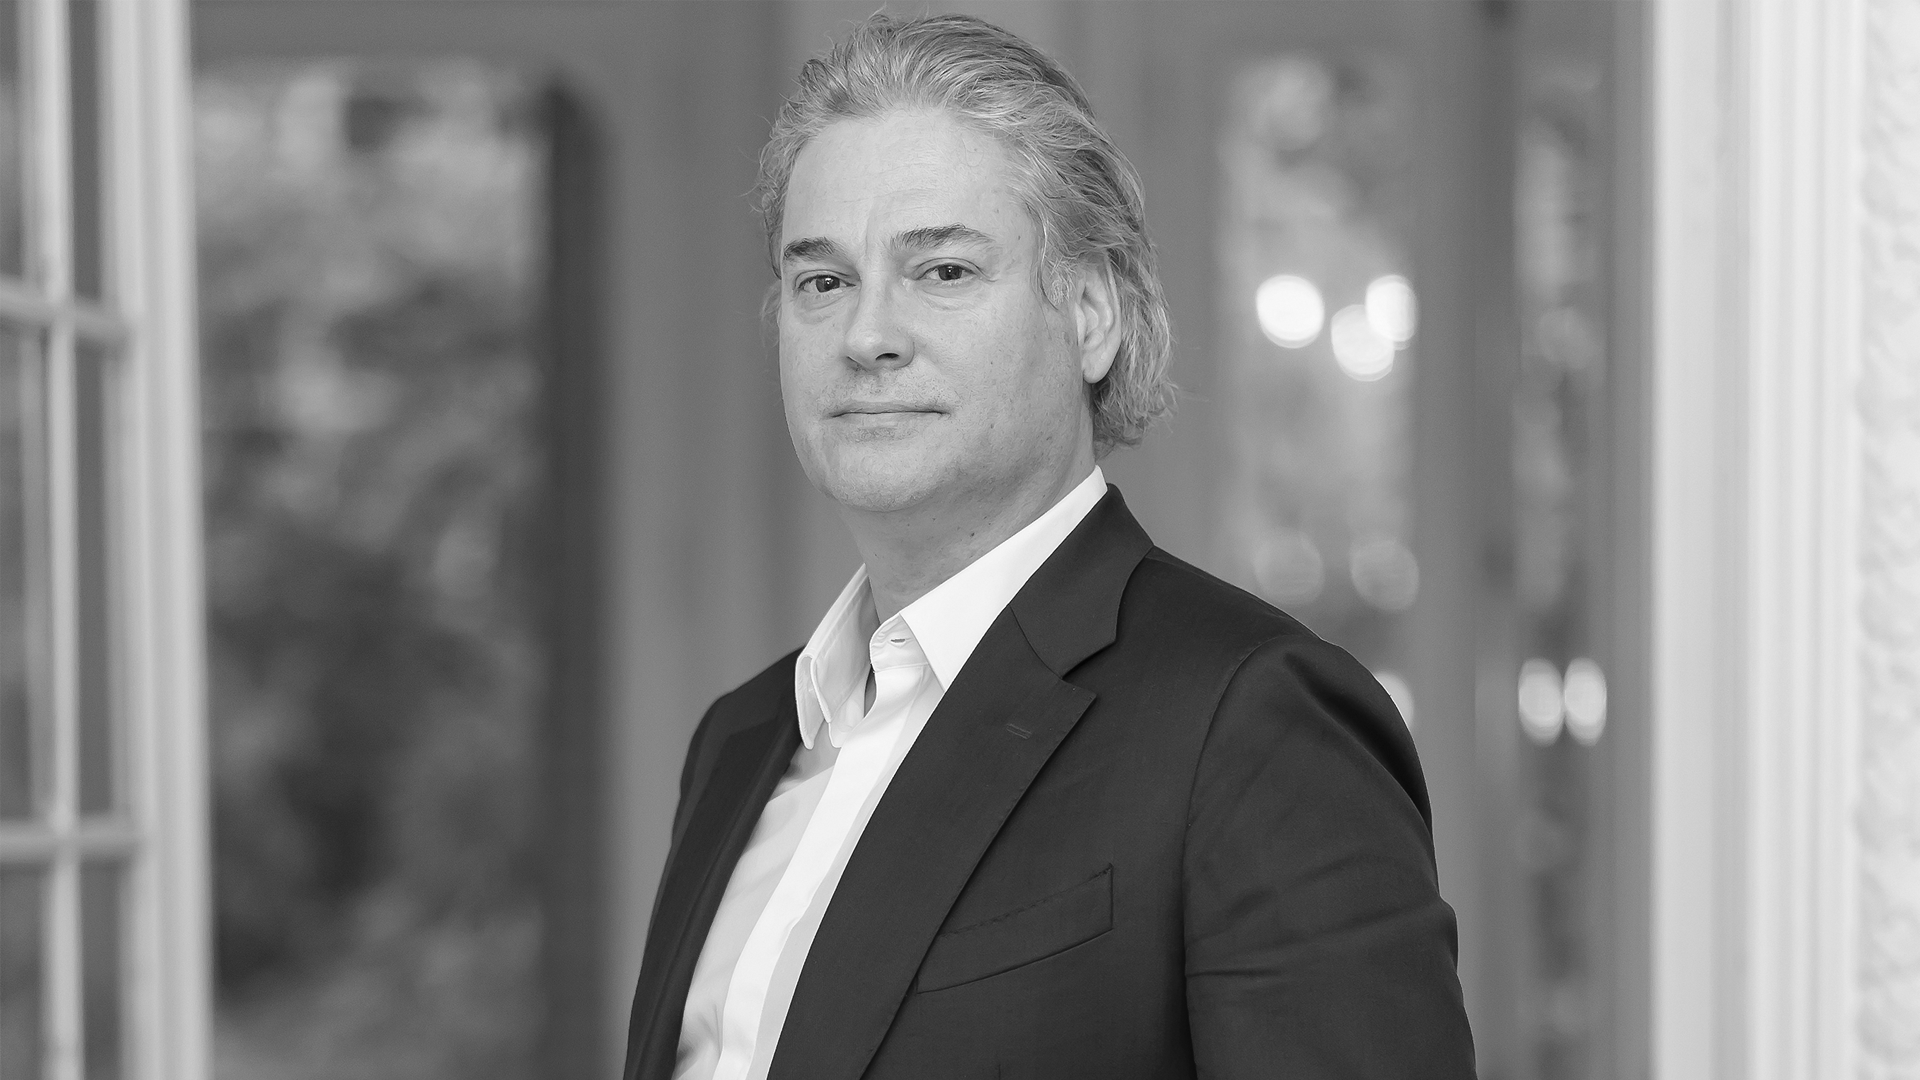 Didier Lagae: ‘Las marcas líderes son per sé agentes de cambio’